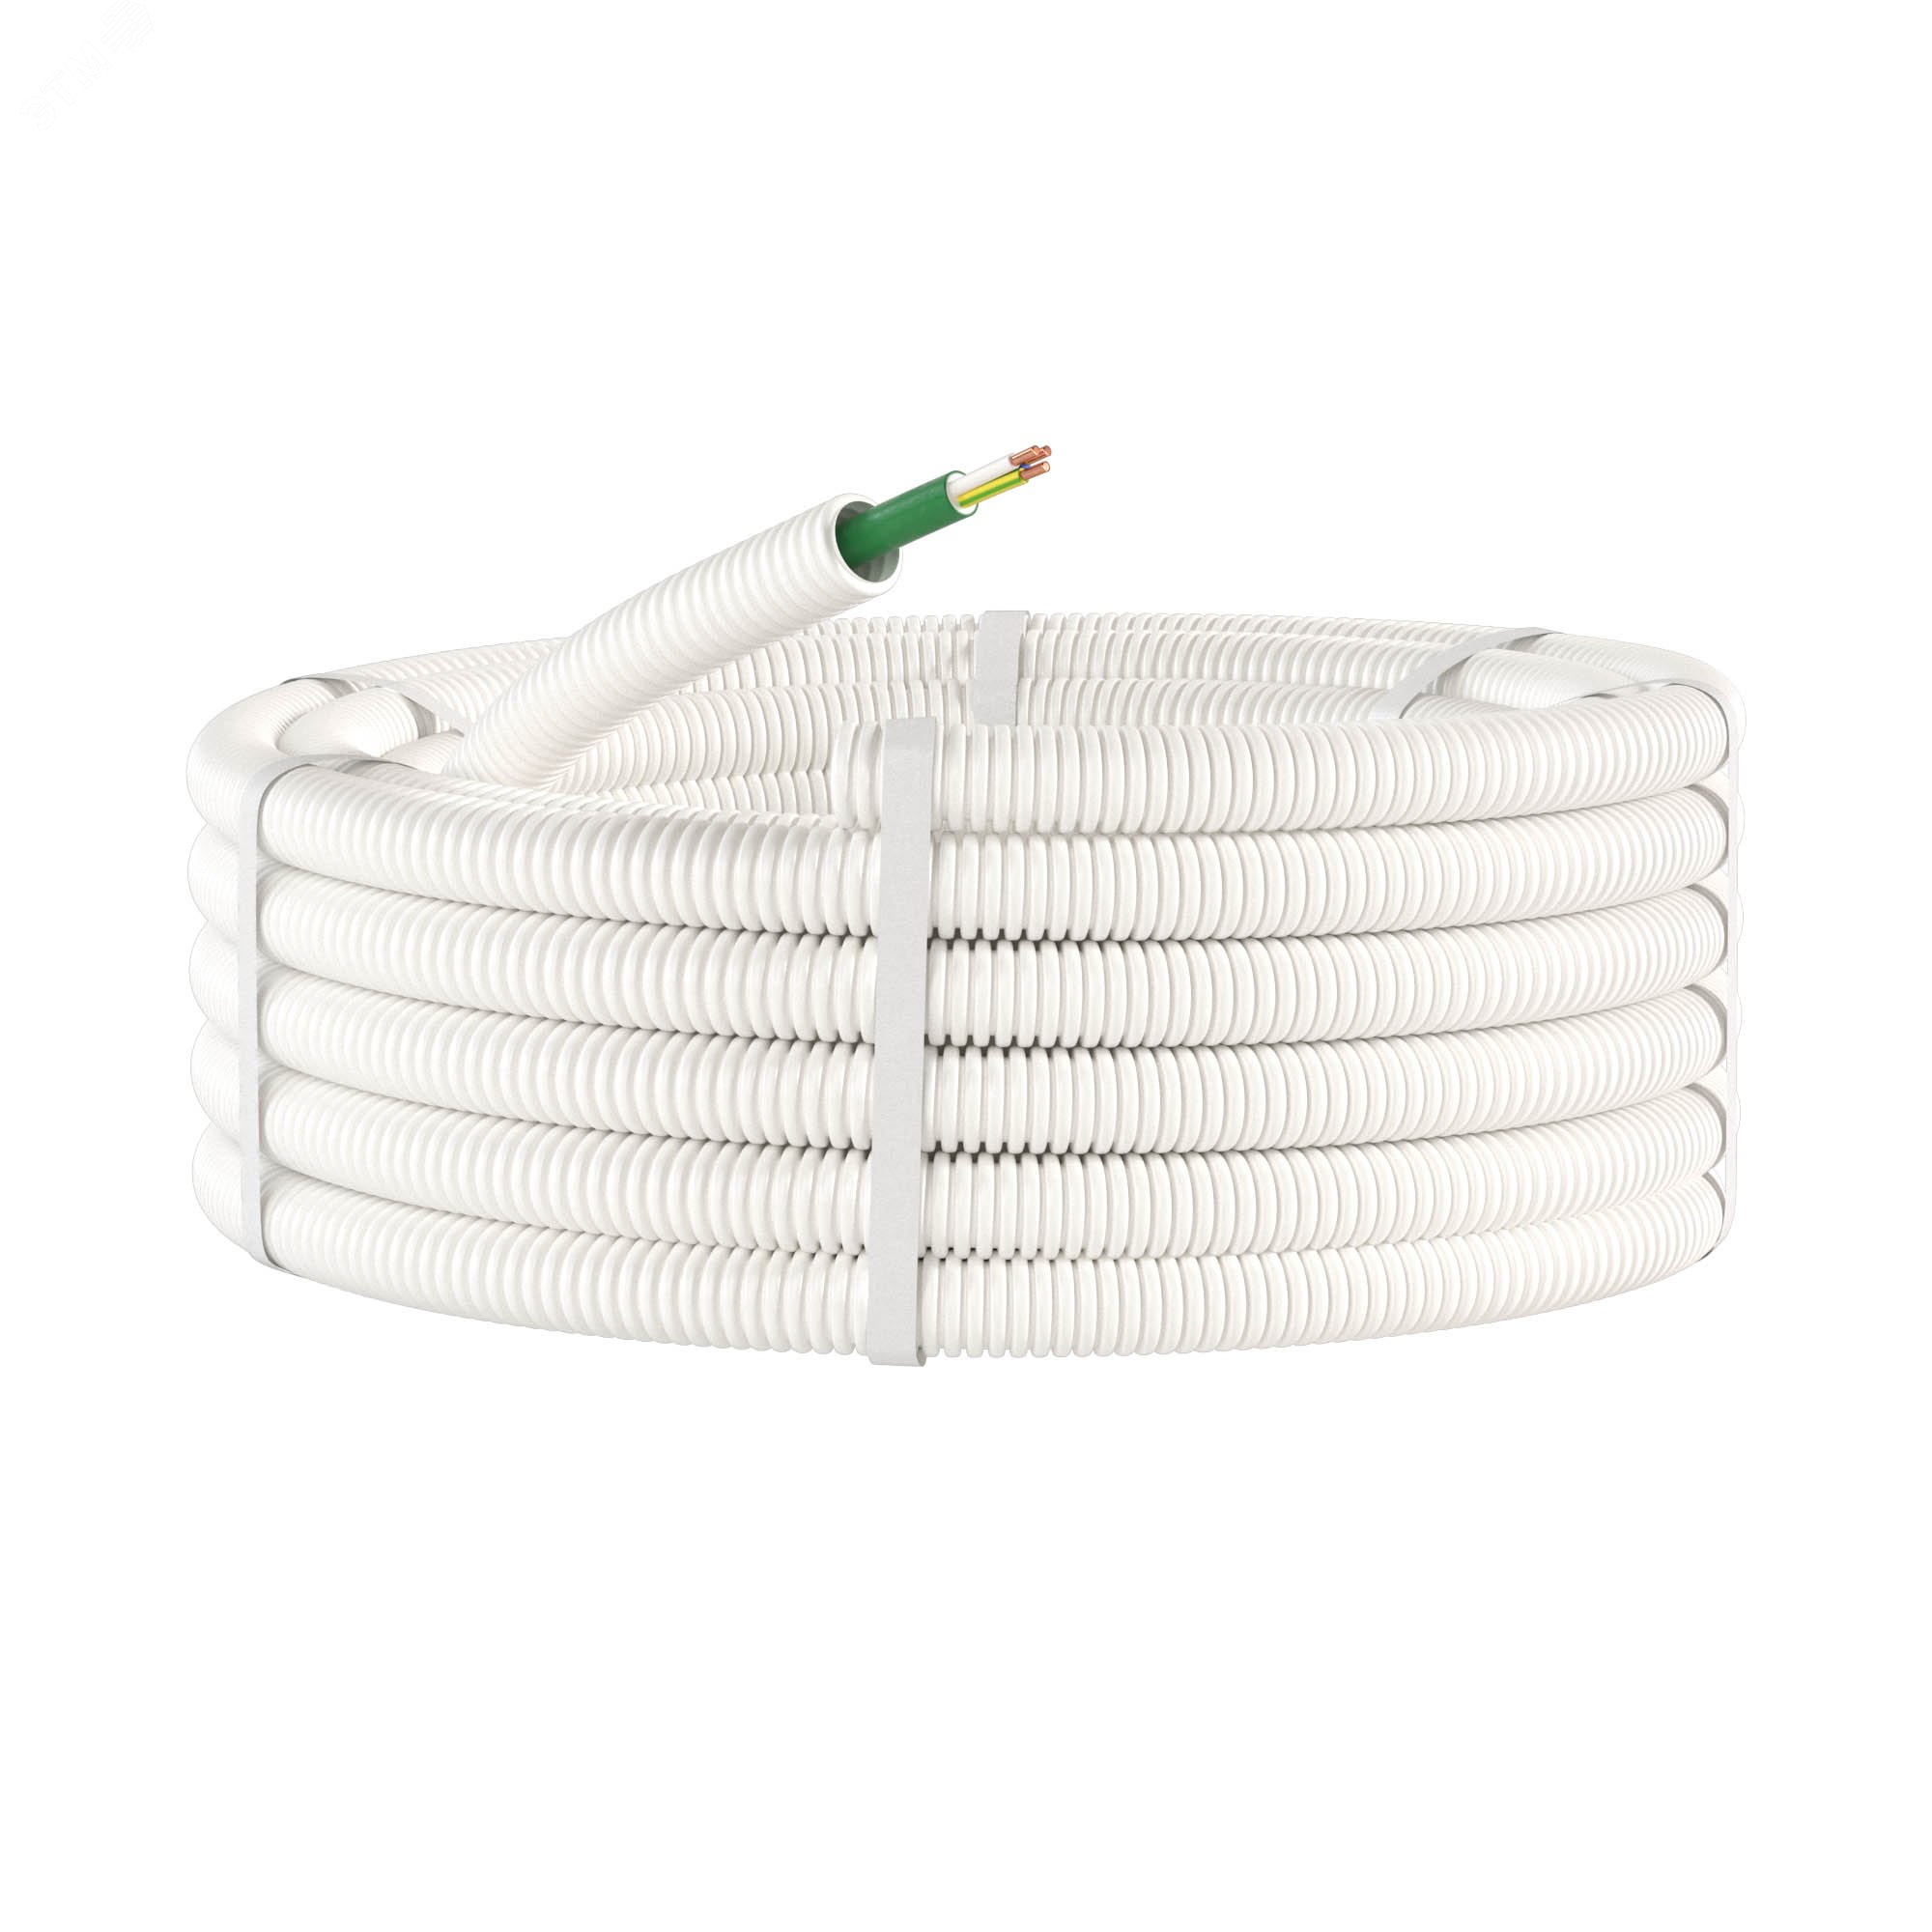 Электротруба ПЛЛ гибкая гофр. не содержит галогенов д.20мм цвет белыйс кабелем ППГнг(А)-HF 3x1,5мм РЭК ГОСТ+, 50м 8L82050HF DKC - превью 3